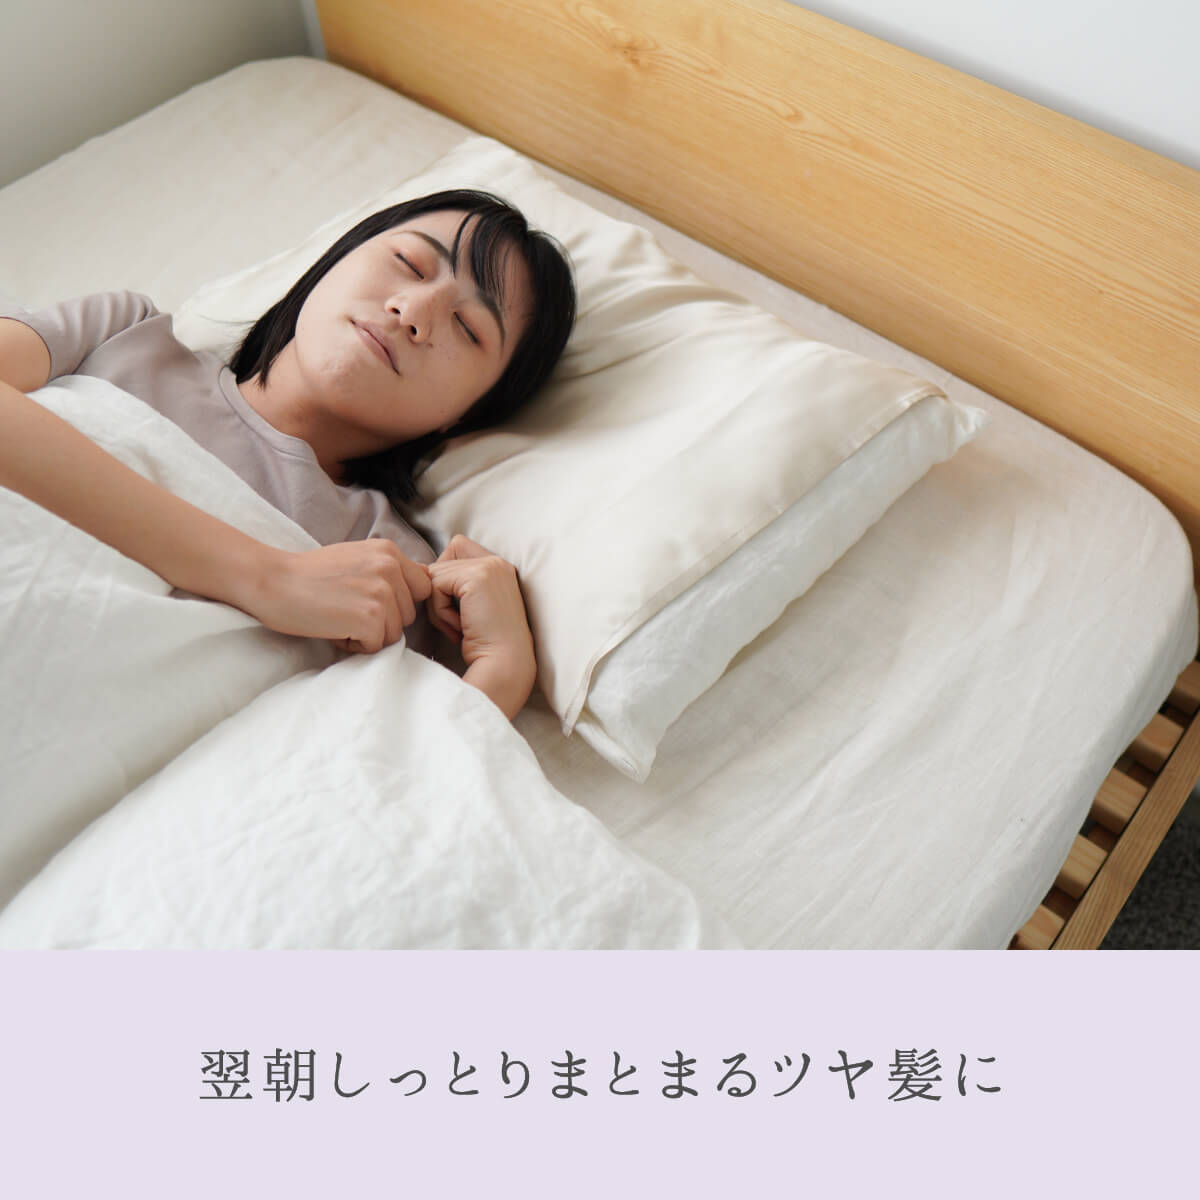 まくらカバー潤肌髪シルク100%枕カバー絹美容天然素材睡眠安眠快眠絹屋日本製ギフトプレゼント